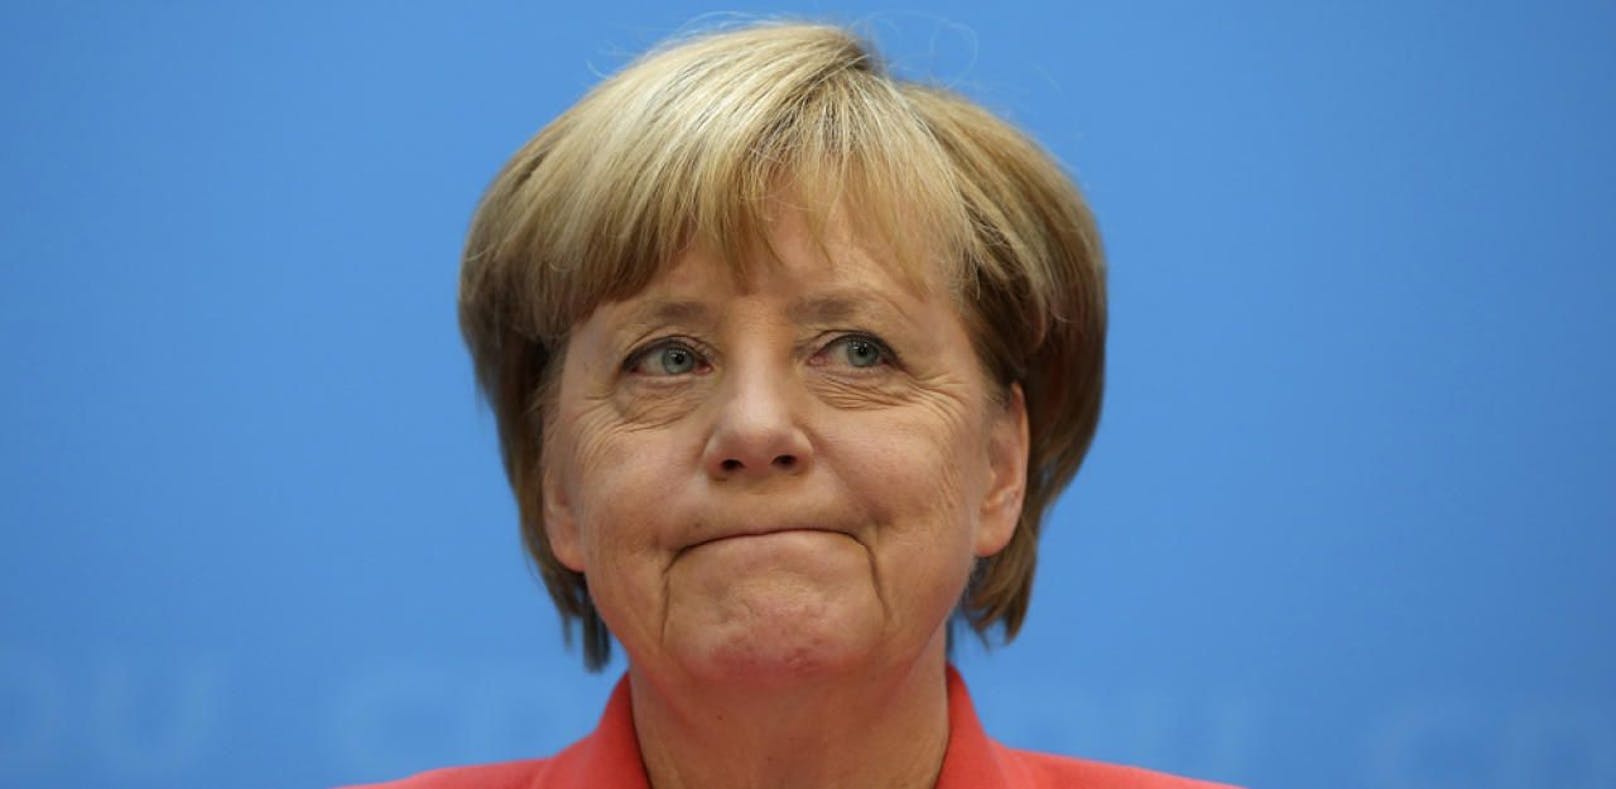 Fast jeder zweite Deutsche will Merkels Rücktritt